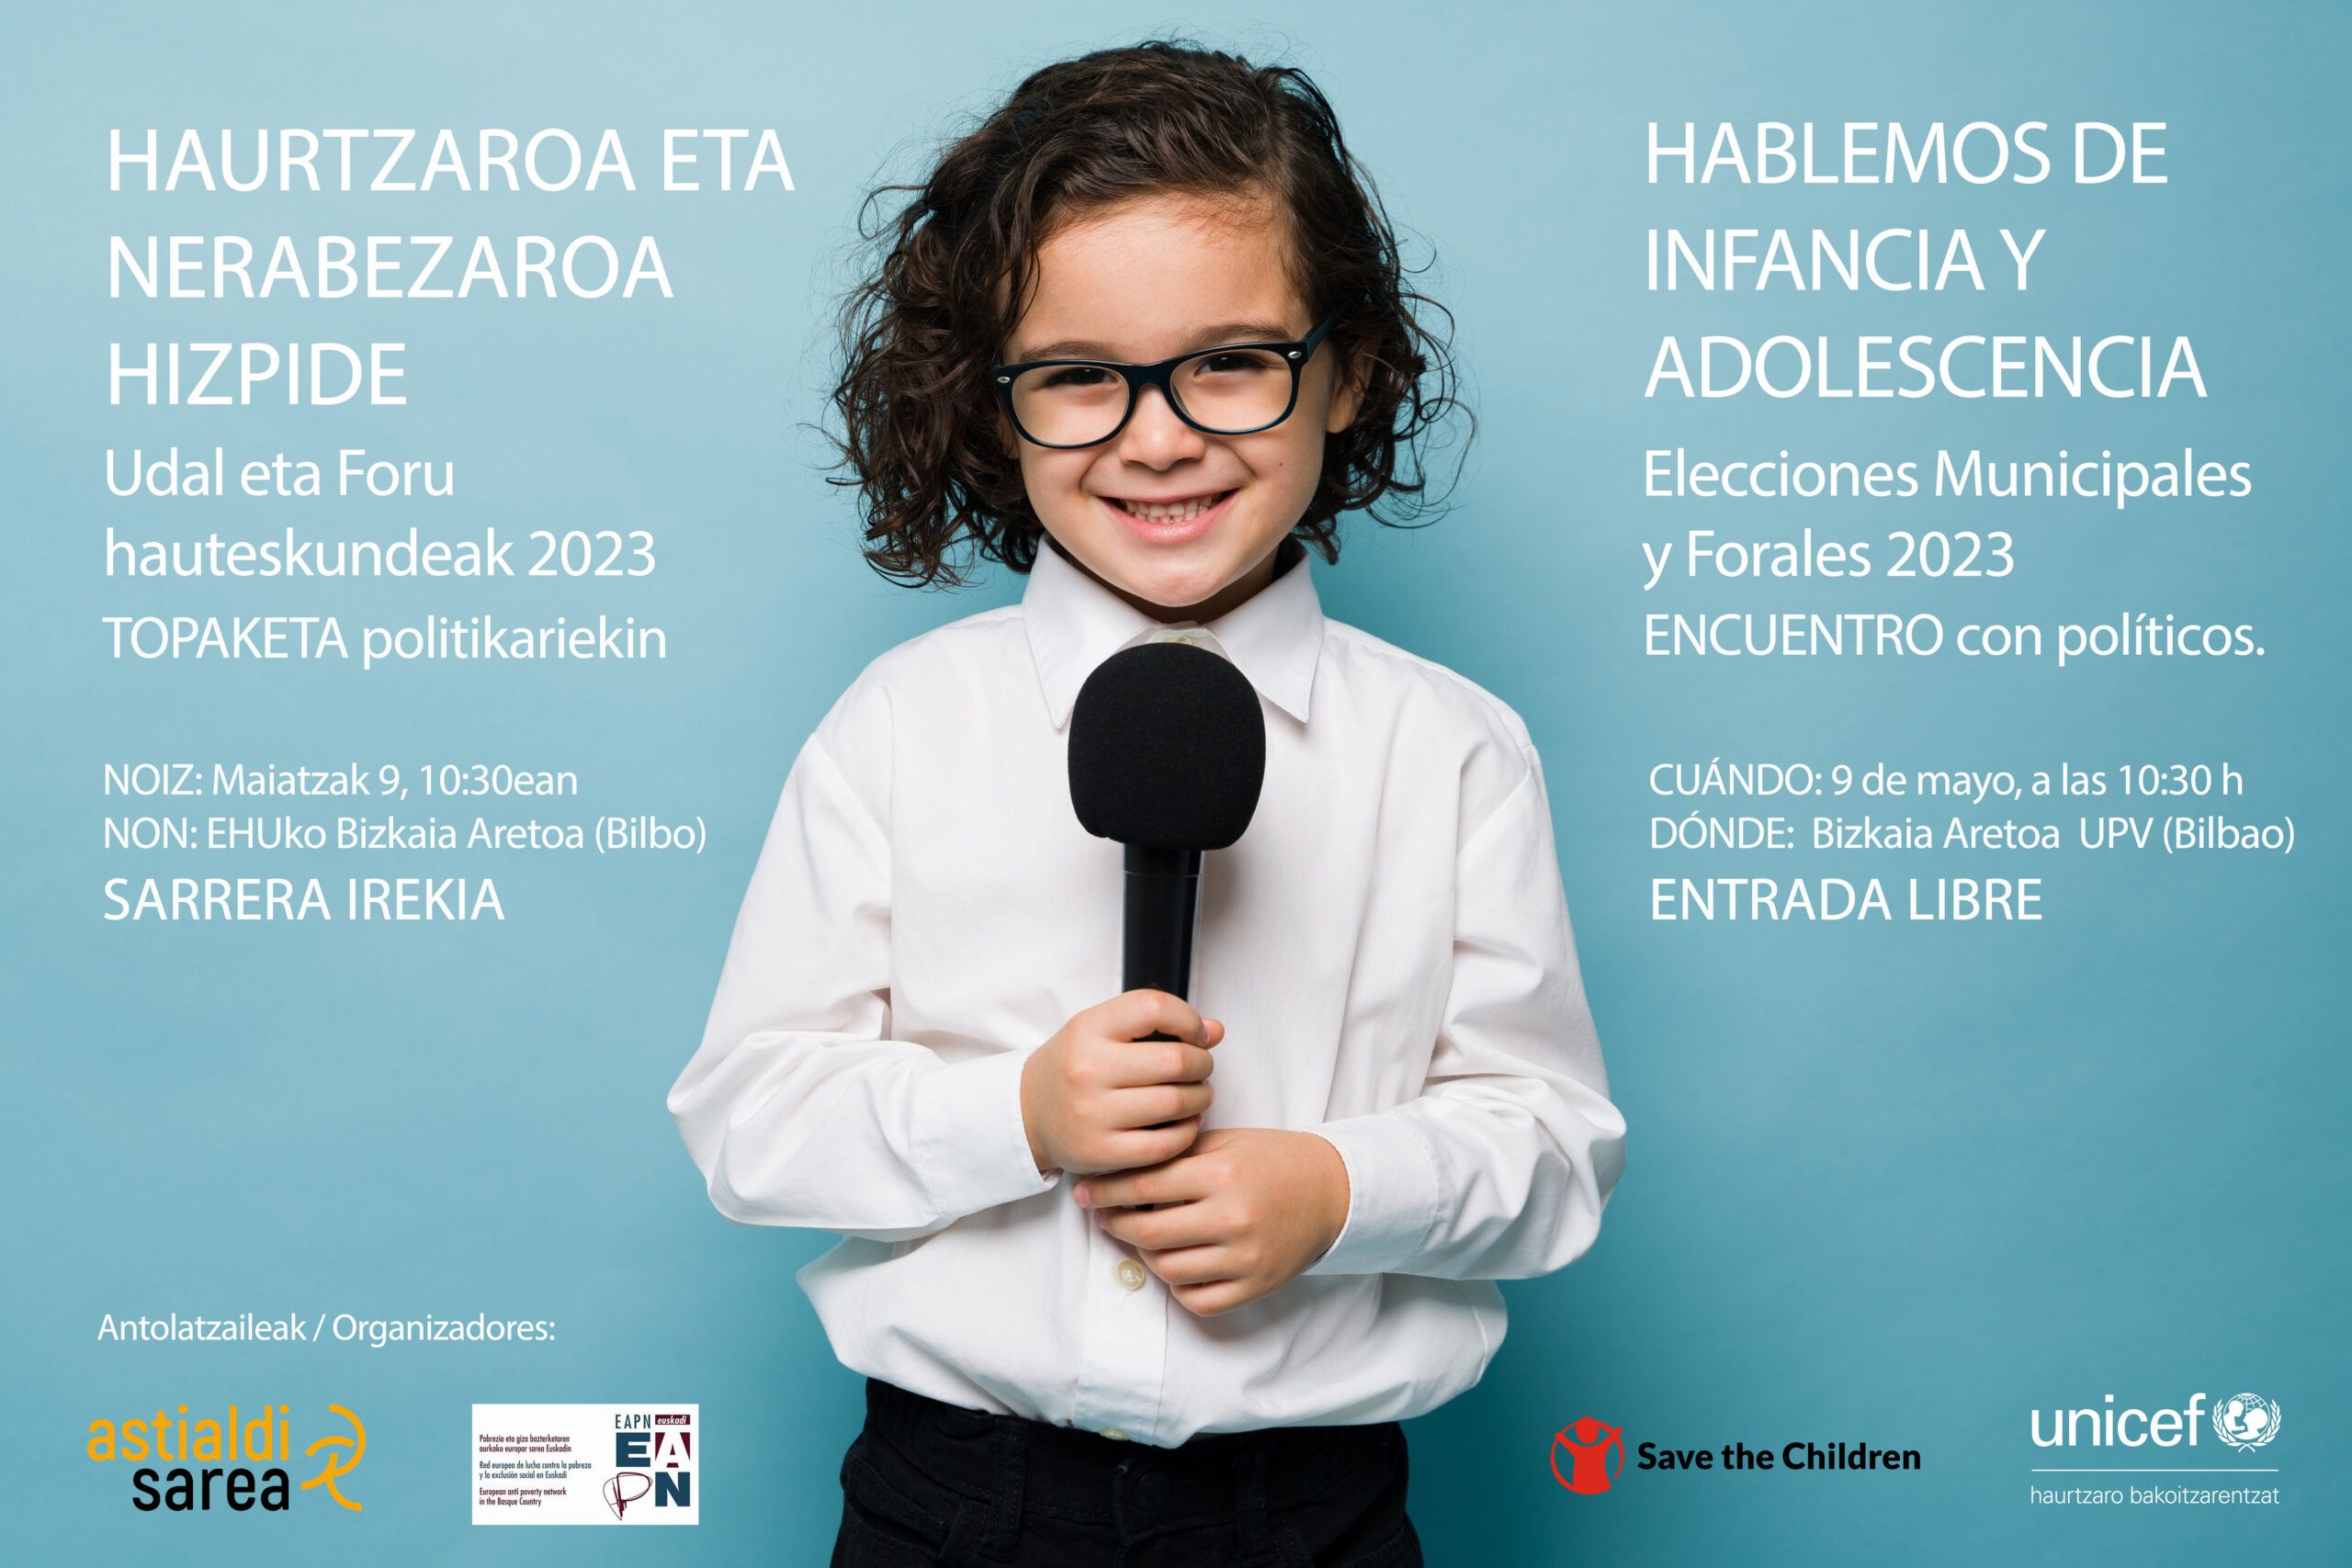 Cartel evento "Hablemos de infancia y adolescencia. Elecciones Municipales y Forales 2023"